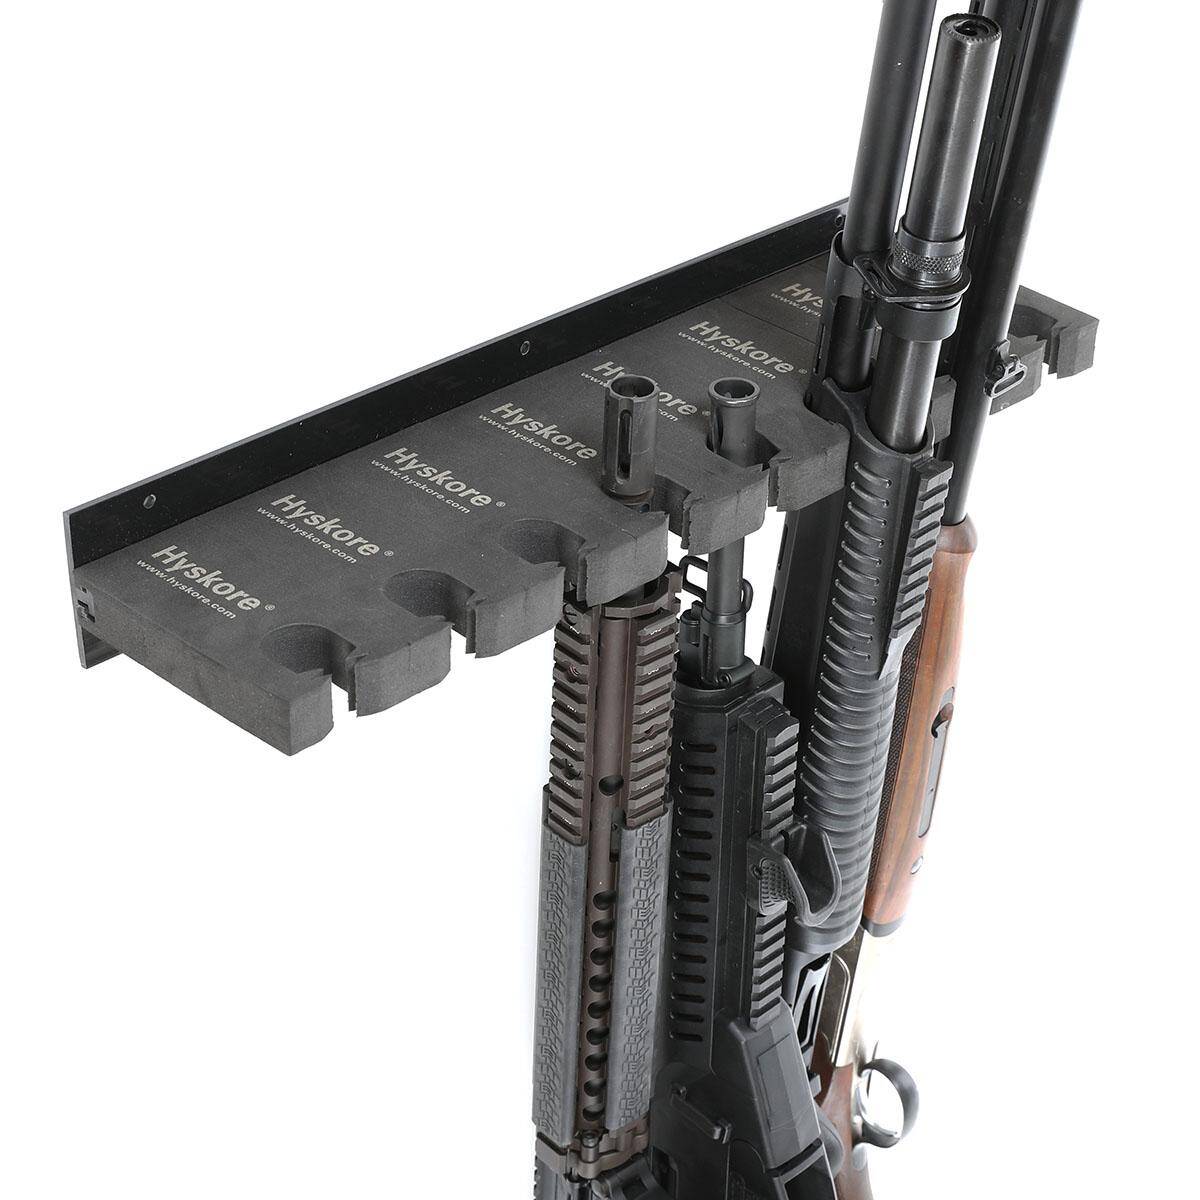 Hyskore Modular Rifle Stand